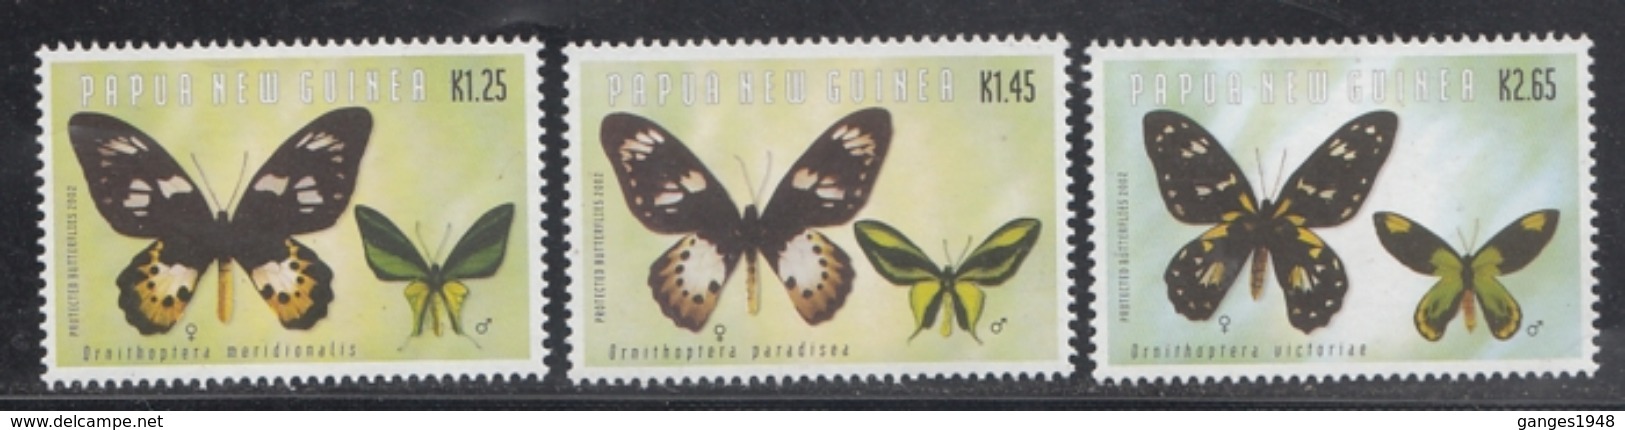 Papua New Guinea  Butterflies  3v  MNH #  93721 - Farfalle